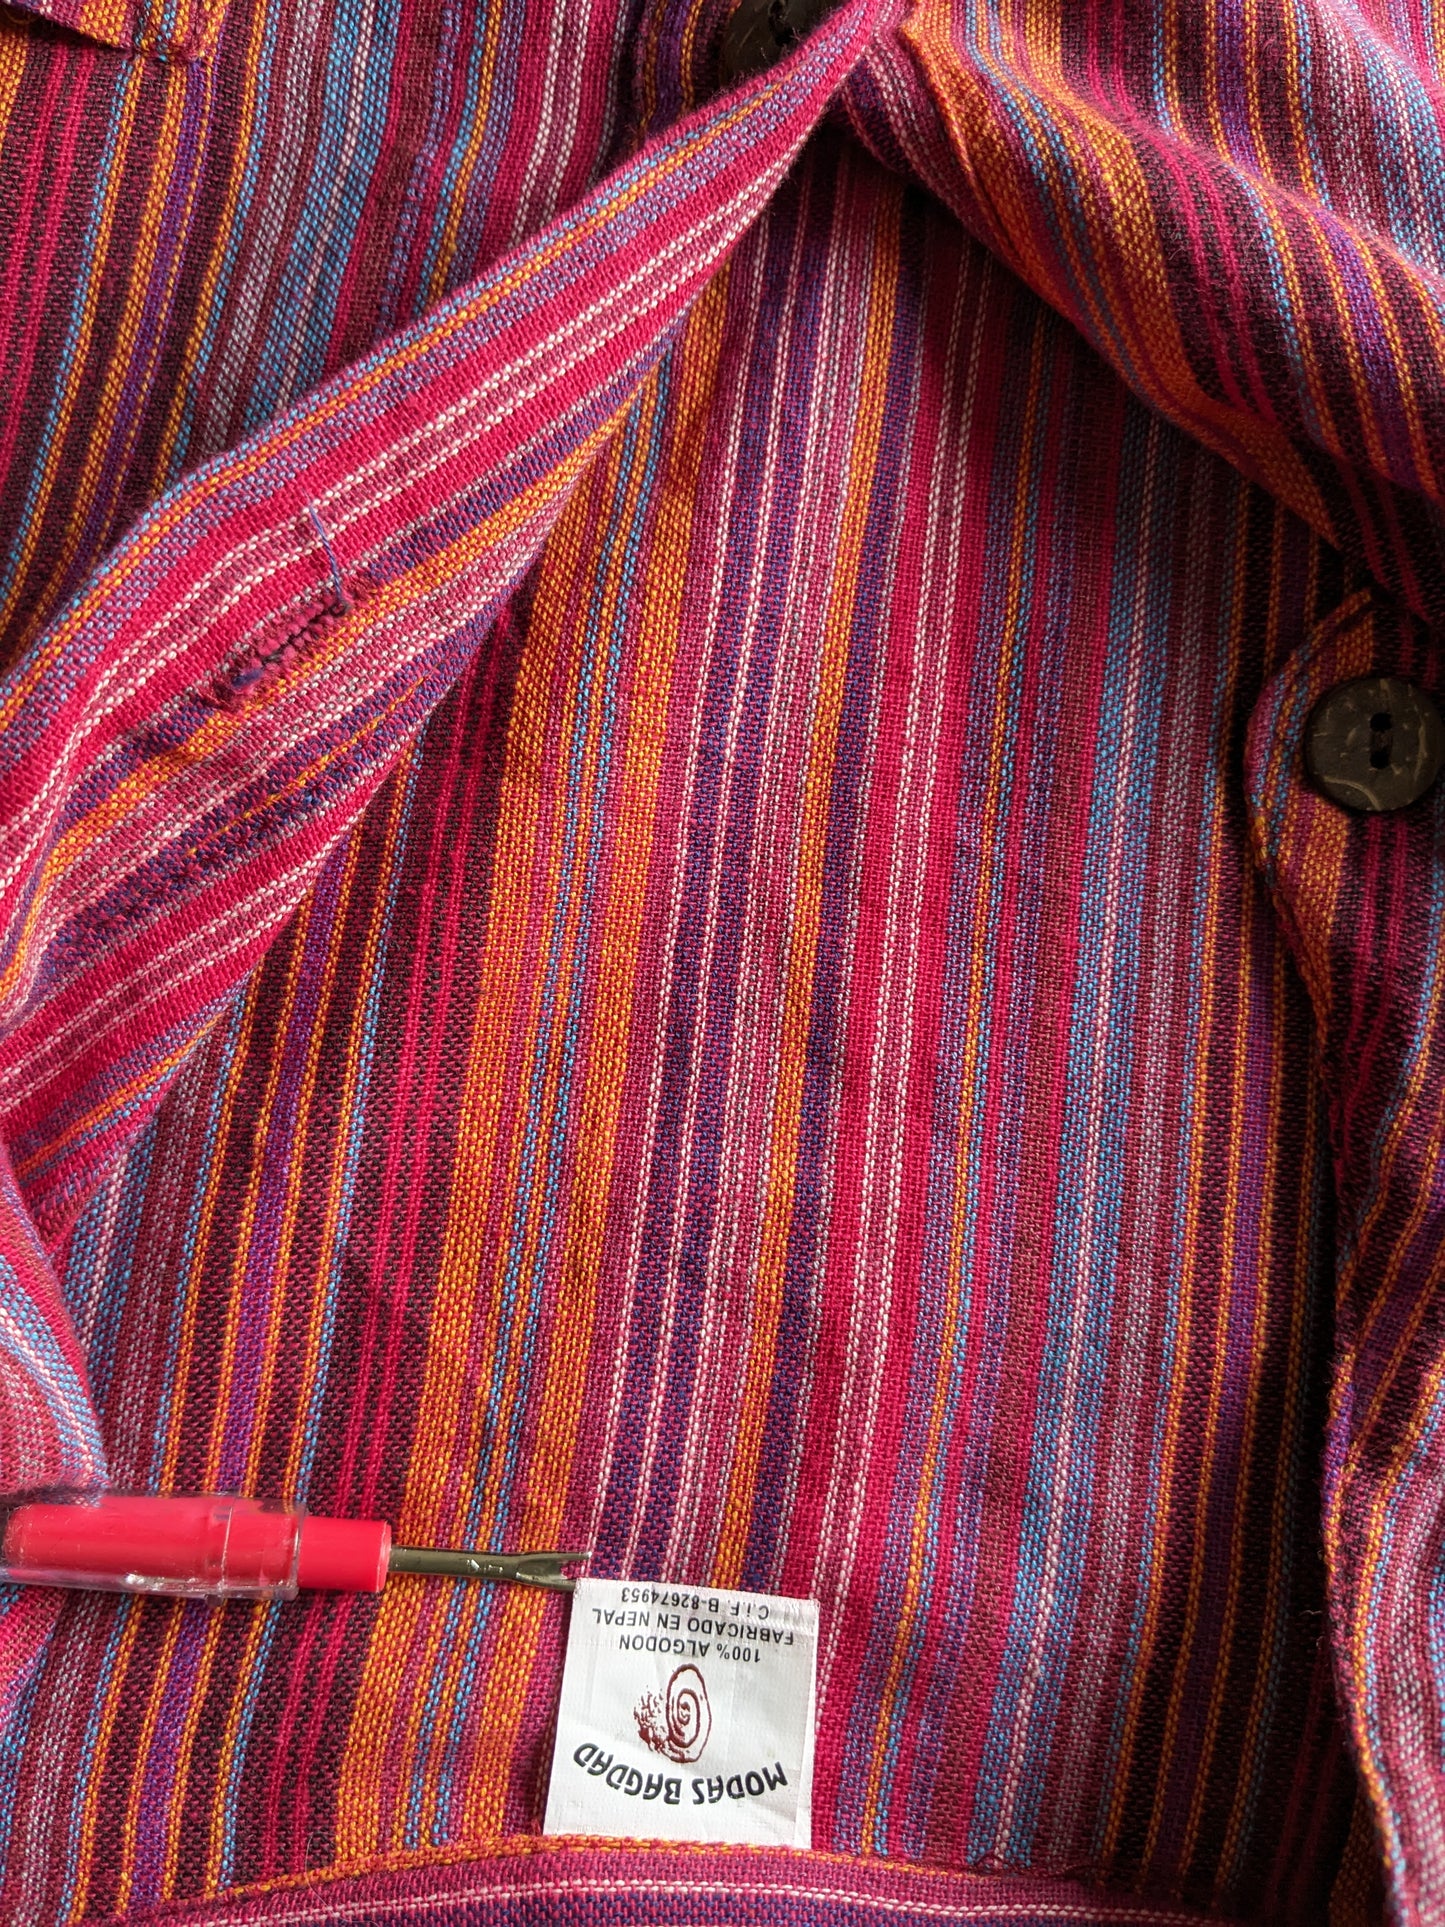 Vintage Modas Baghdad Polotrui / chemise avec mao / collier debout / fermier. Rayé rouge / coloré. Taille L.